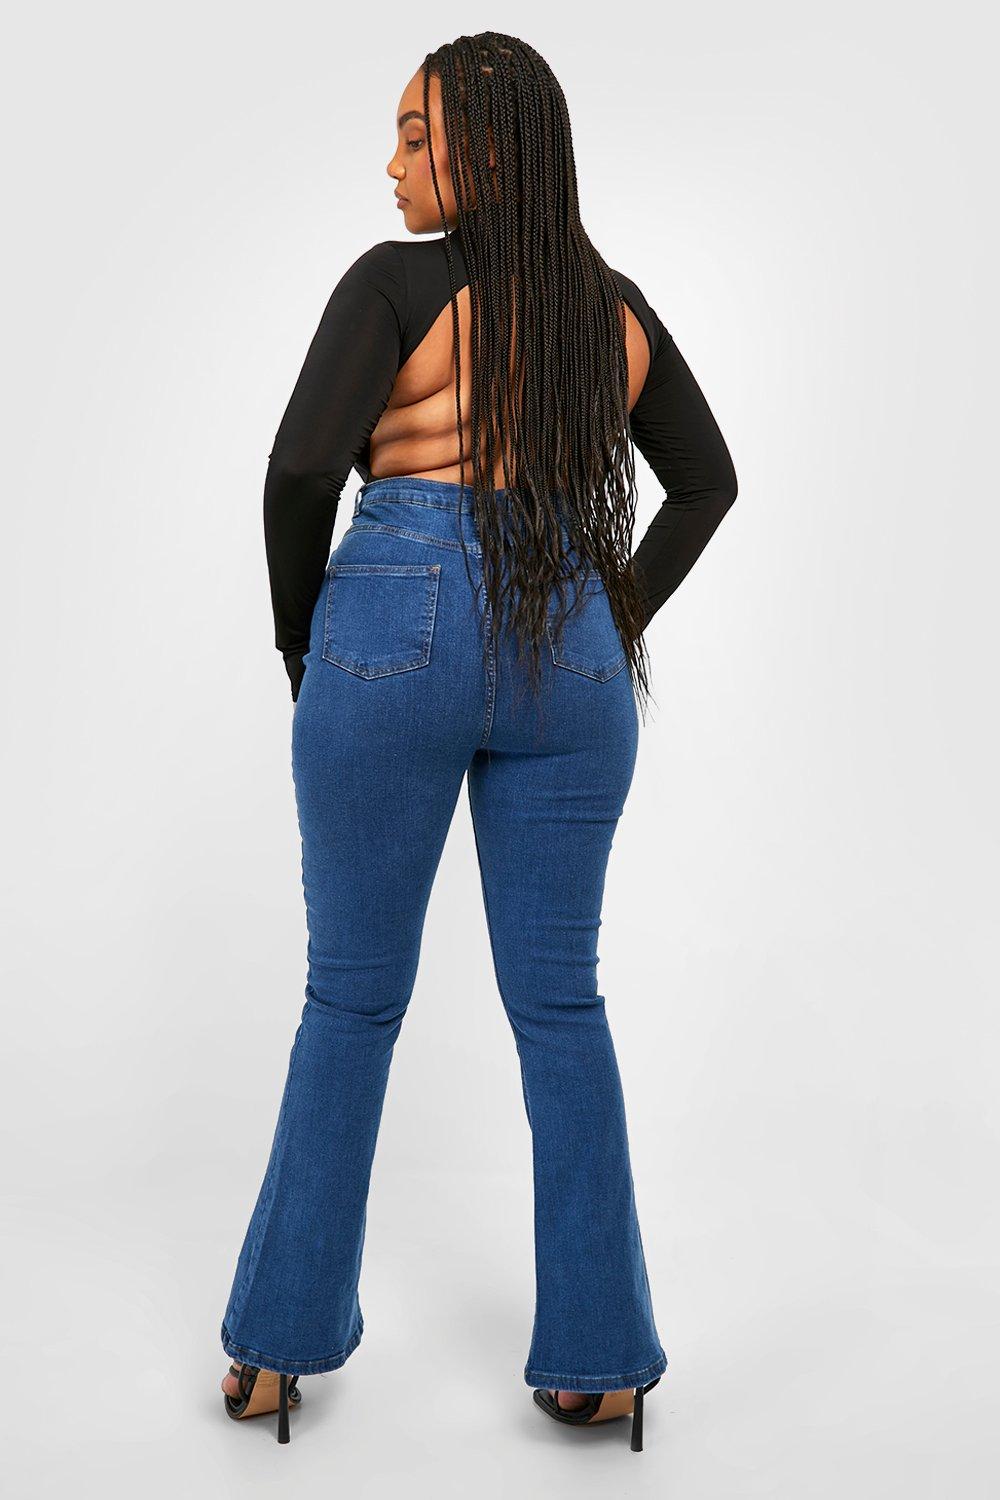 Damen Bekleidung Jeans Schlagjeans Haikure Denim Schlagjeans mit hohem Bund in Blau 